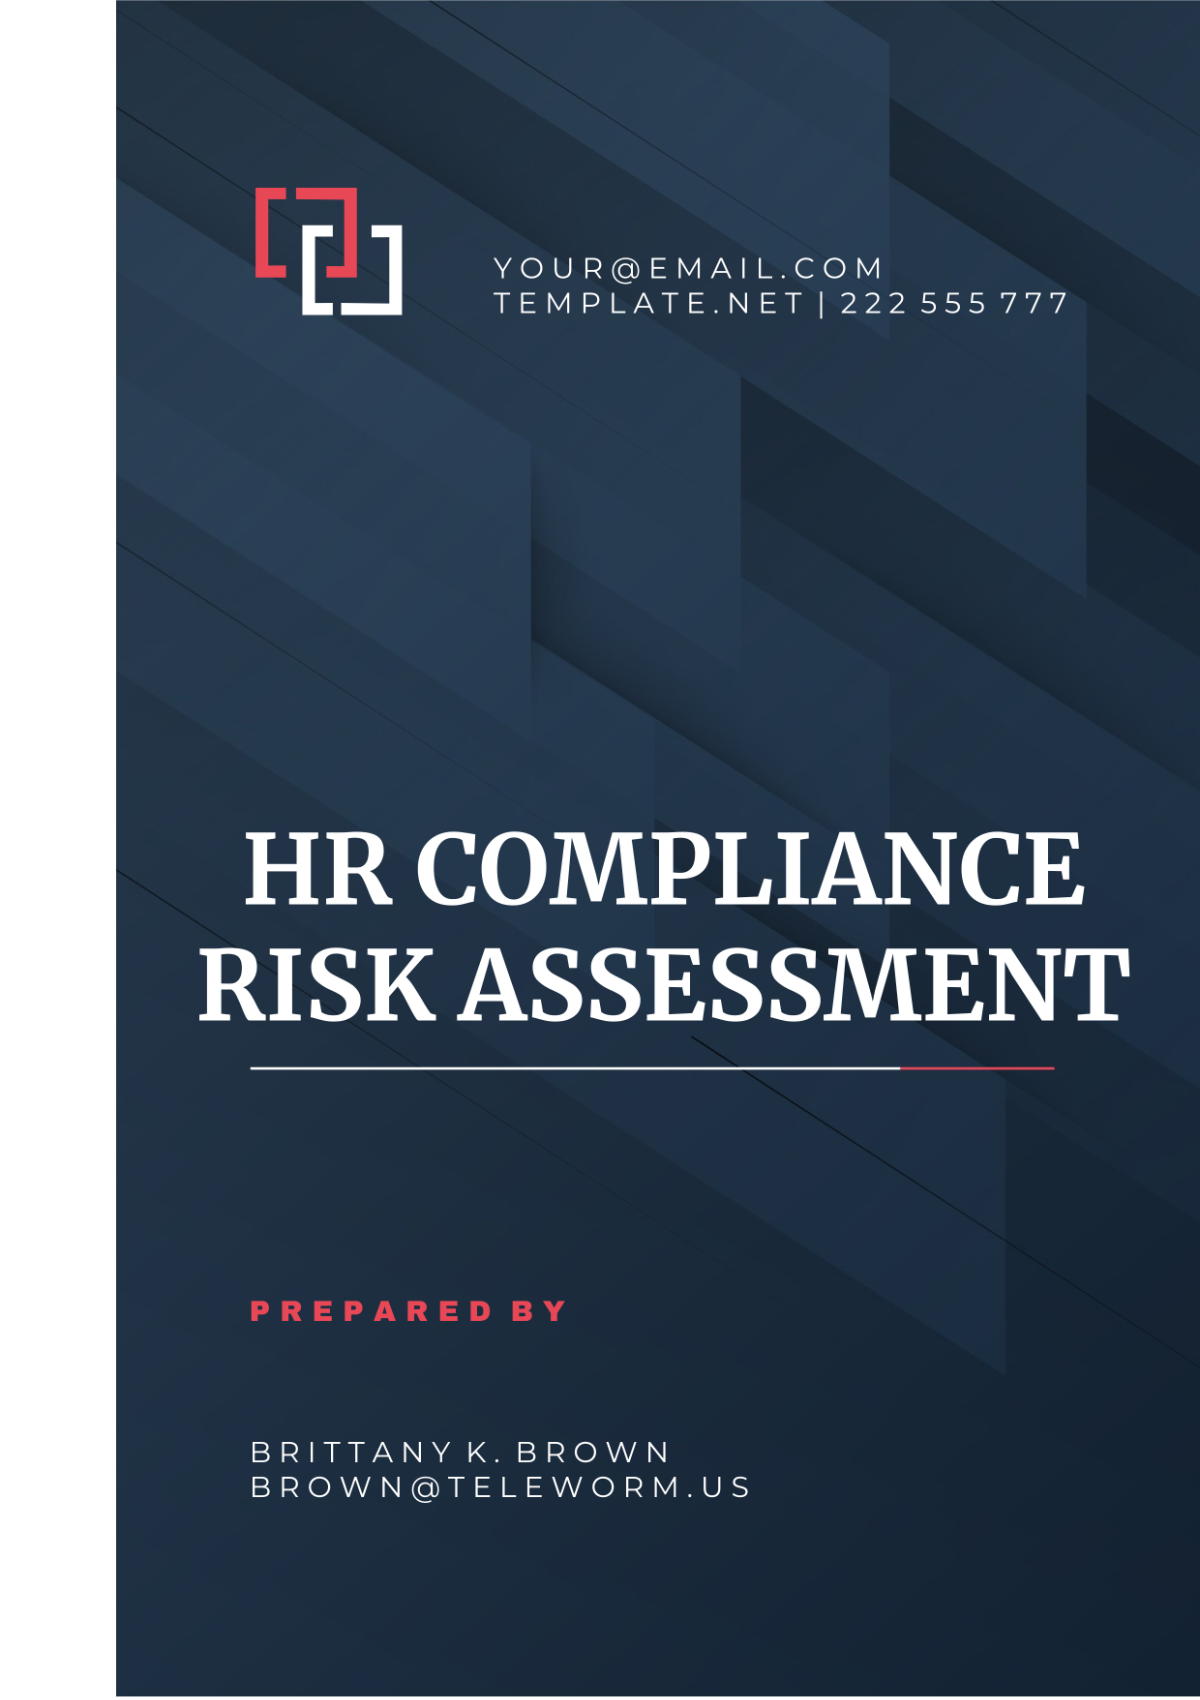 HR Compliance Risk Assessment Template